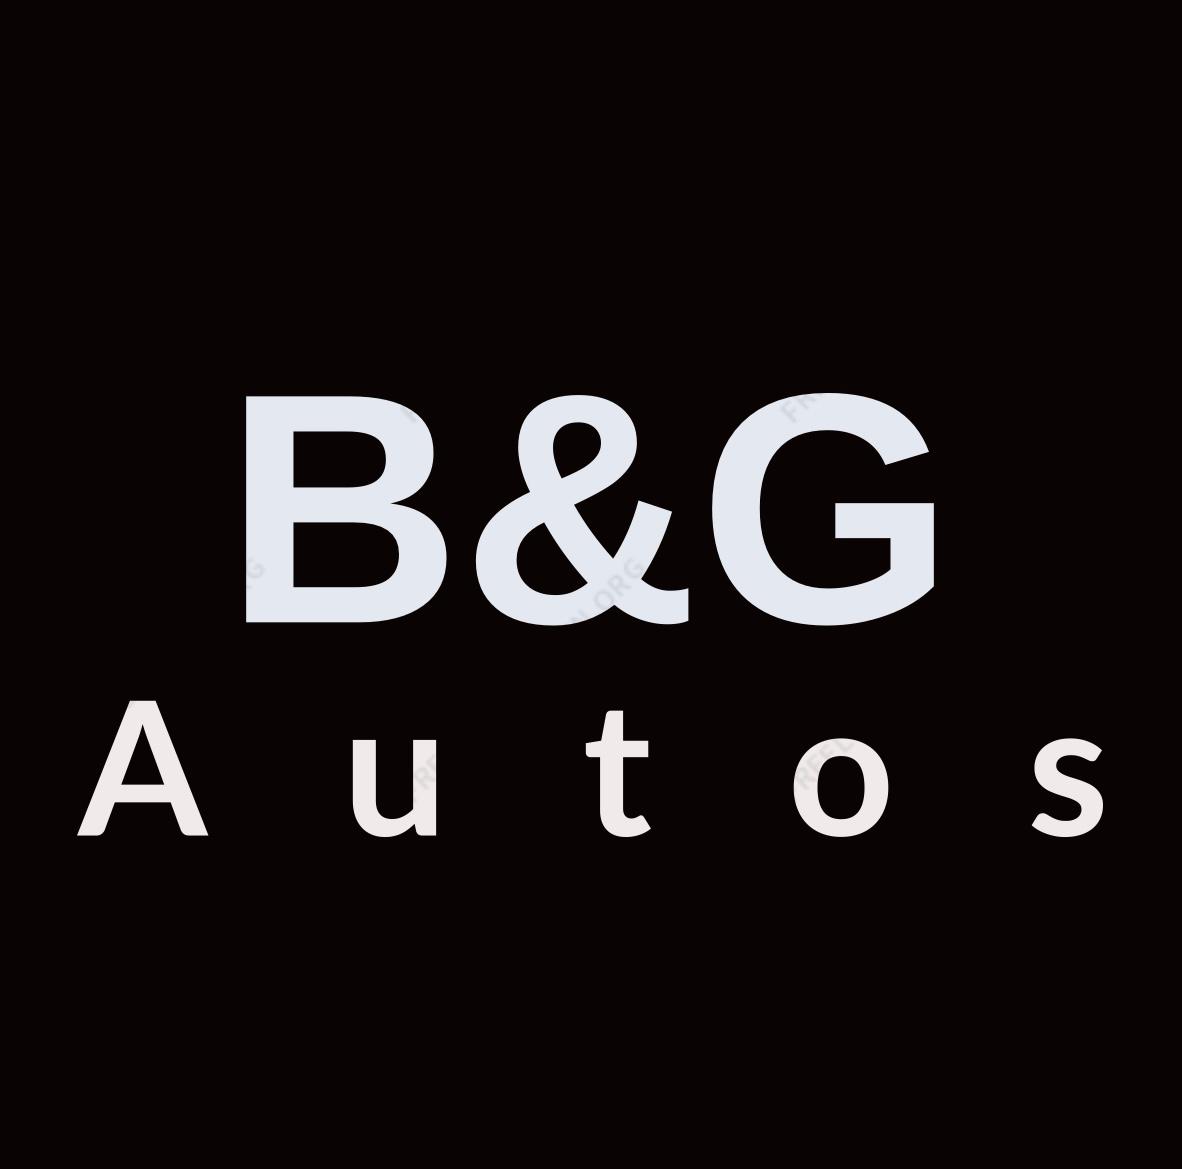 Images B&G Autos